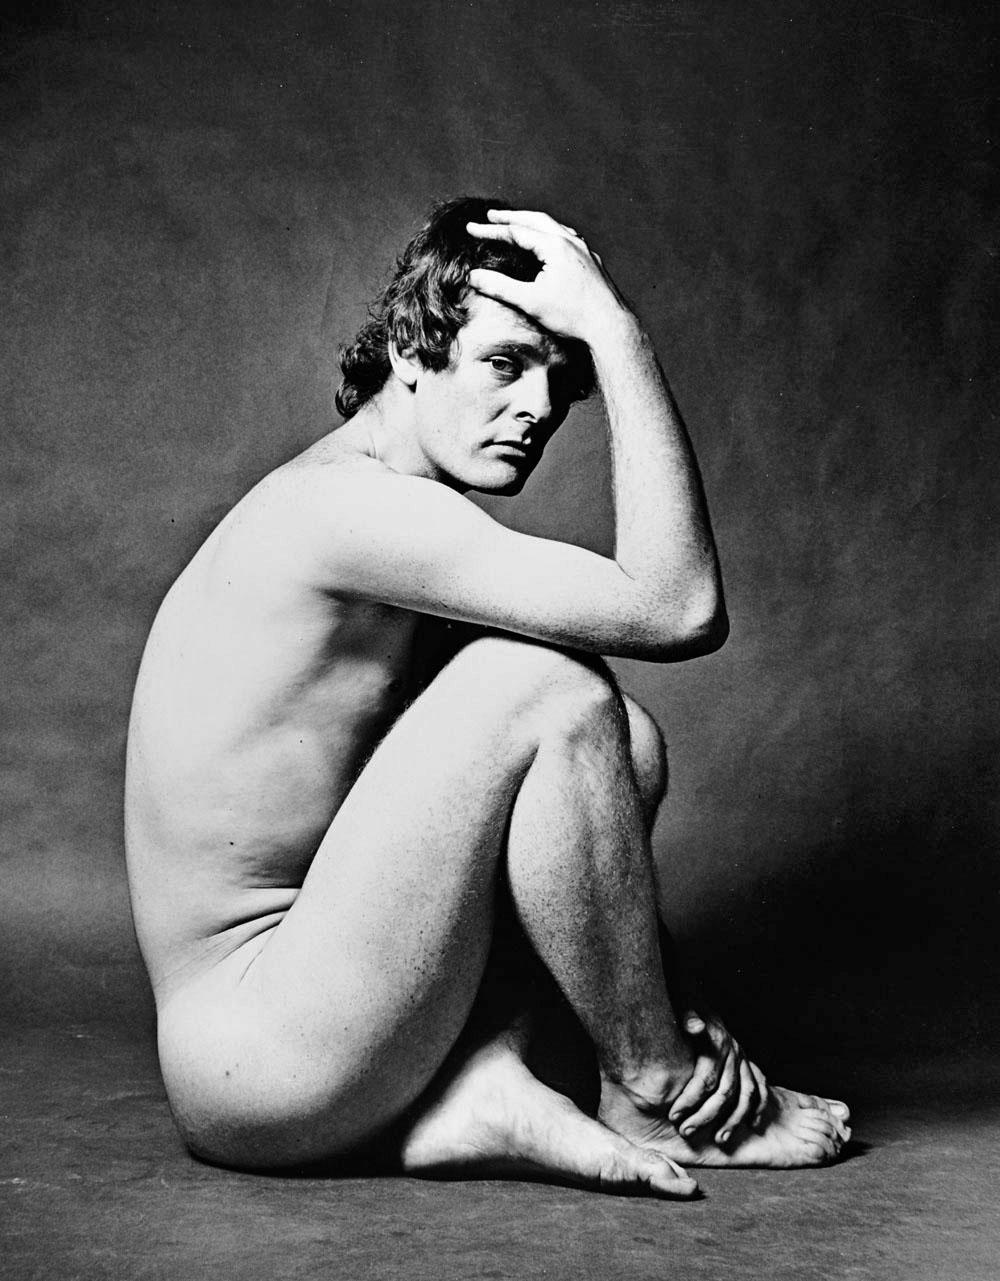  Andy Warhol, le réalisateur du film Paul Morrissey, a photographié un nu pour Vanity Fair